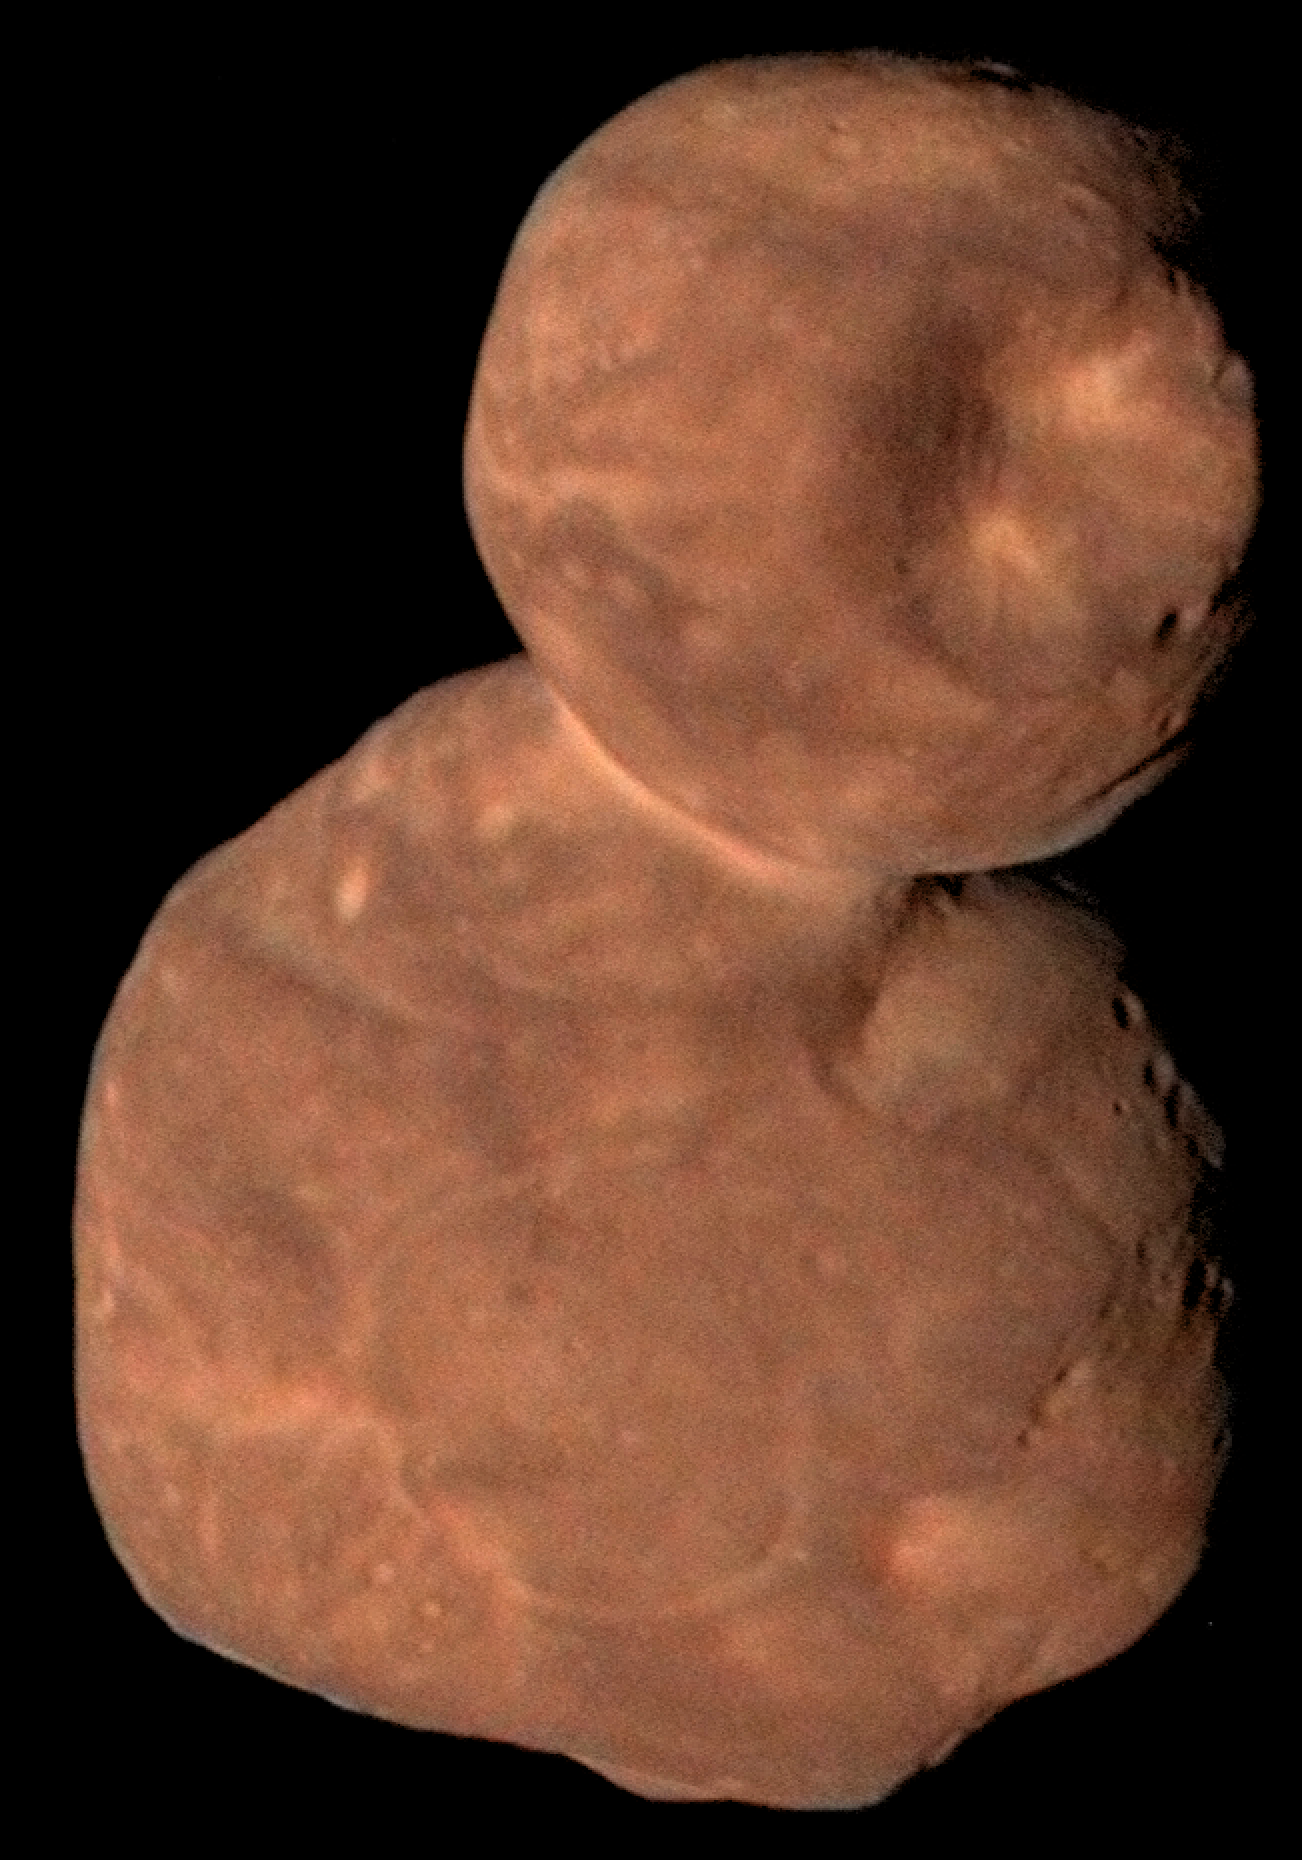 Зведене зображення об’єкта Аррокот пояса Койпера. Автор зображення: NASA